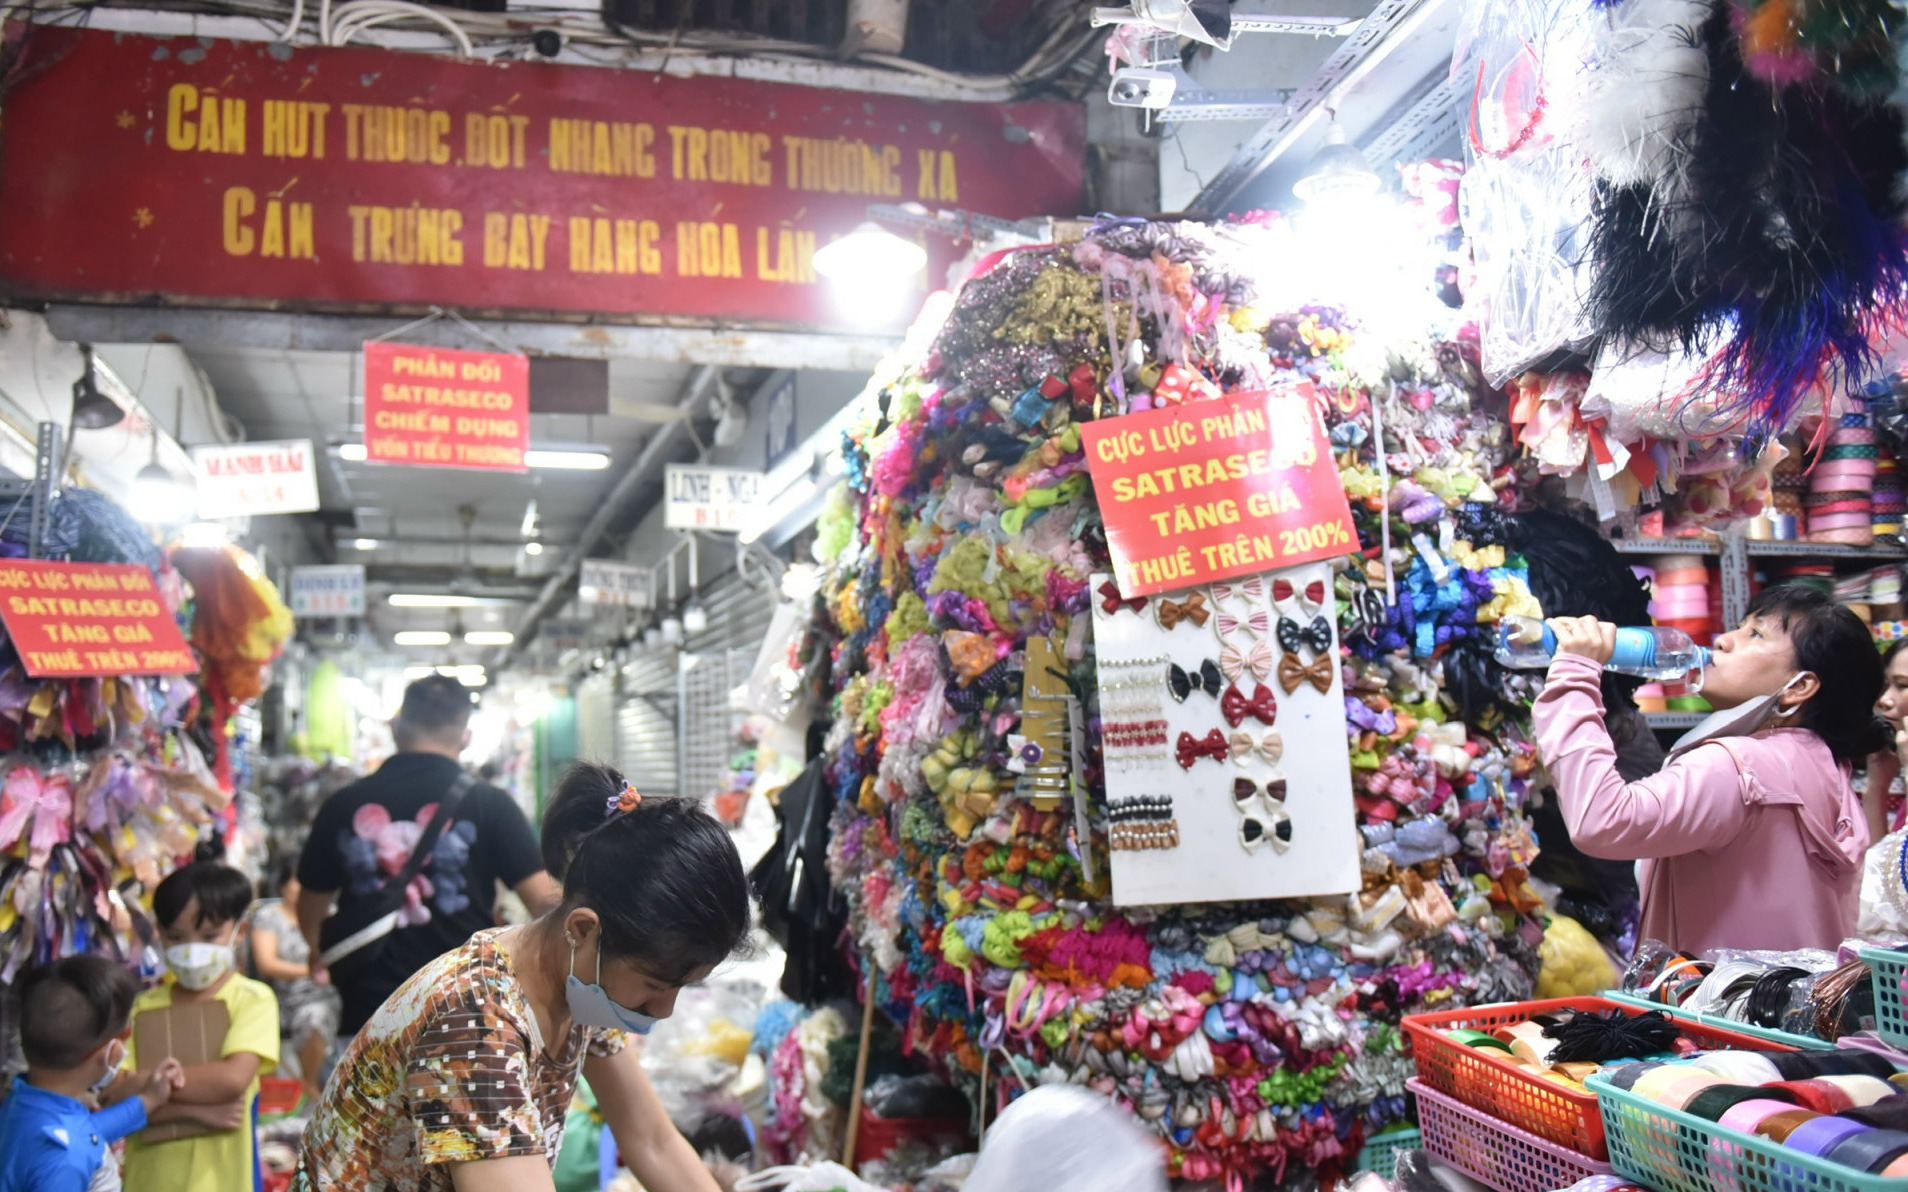 Giá thuê sạp chợ Đại Quang Minh: Tiểu thương nói cao, 